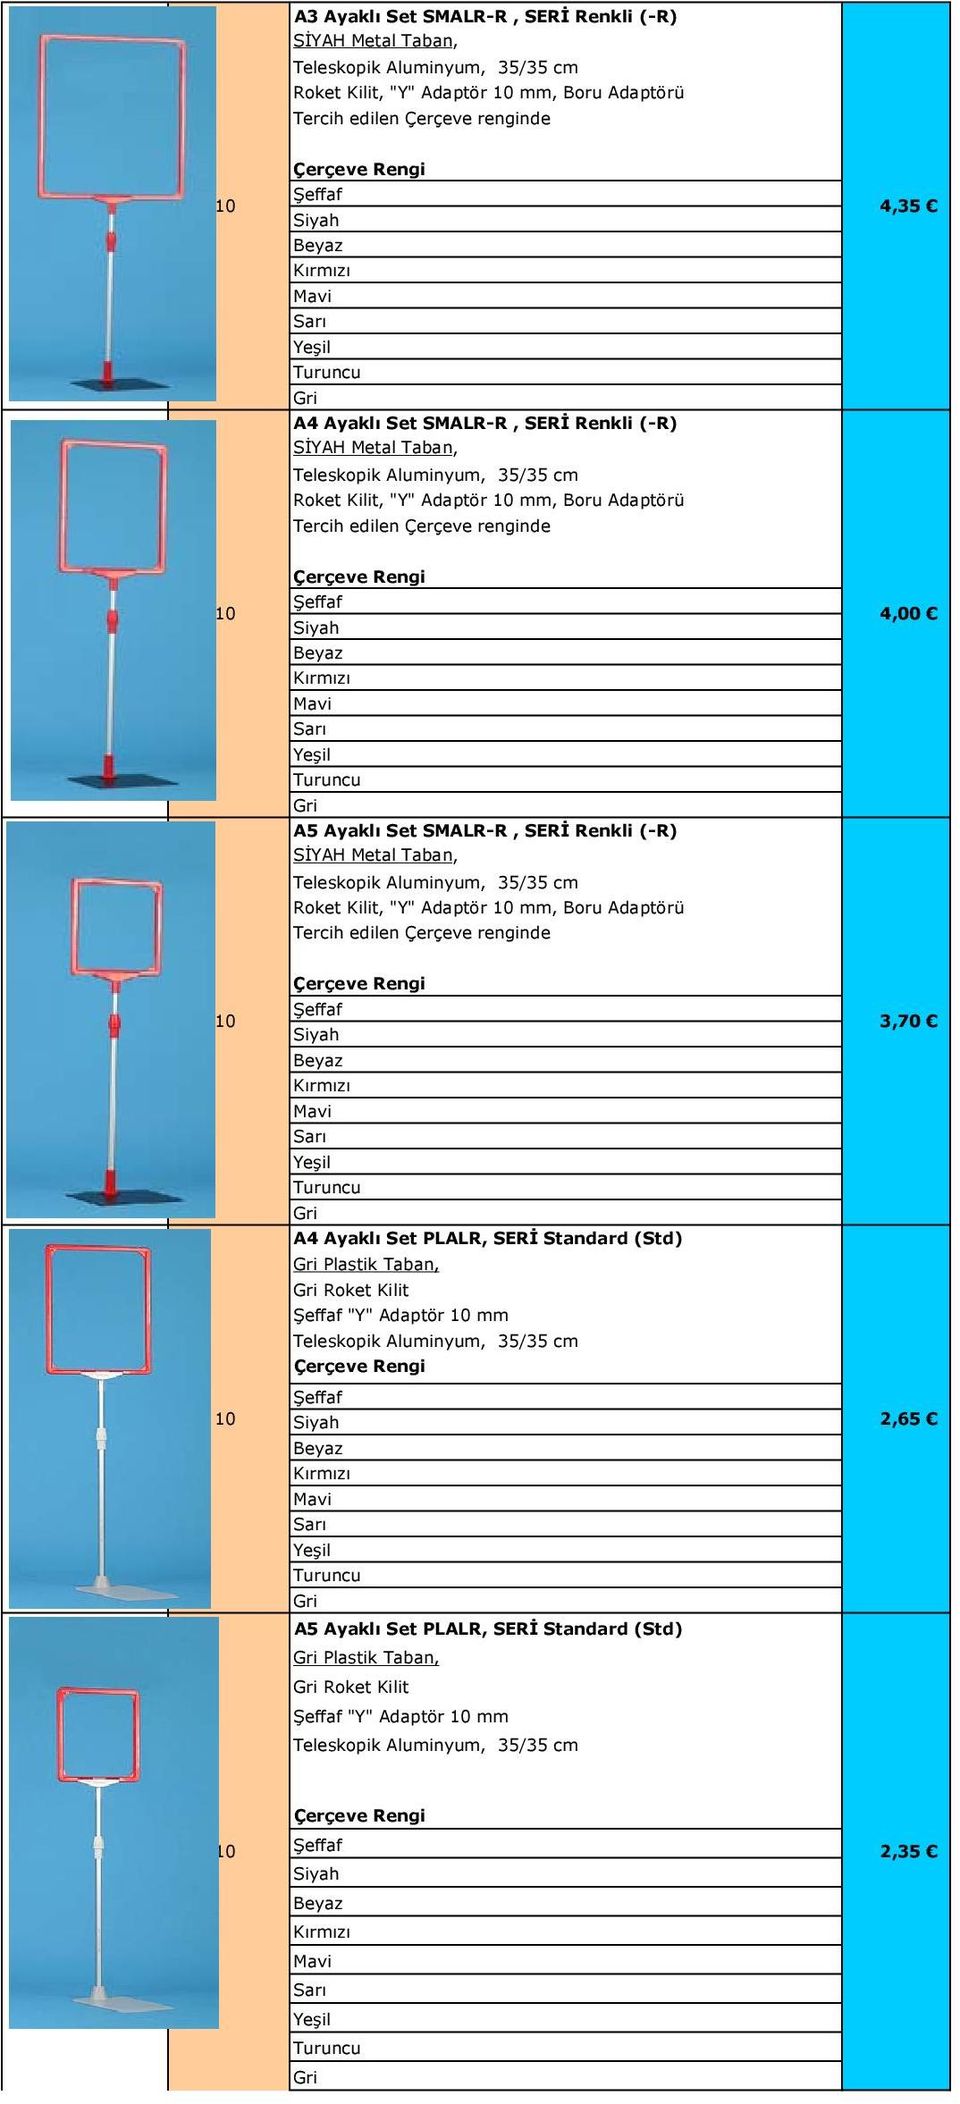 Renkli (-R) SİYAH Metal Taban, Teleskopik Aluminyum, 35/35 cm Roket Kilit, "Y" Adaptör mm, Boru Adaptörü Tercih edilen Çerçeve renginde Çerçeve Rengi 3,70 A4 Ayaklı Set PLALR, SERİ Standard (Std)